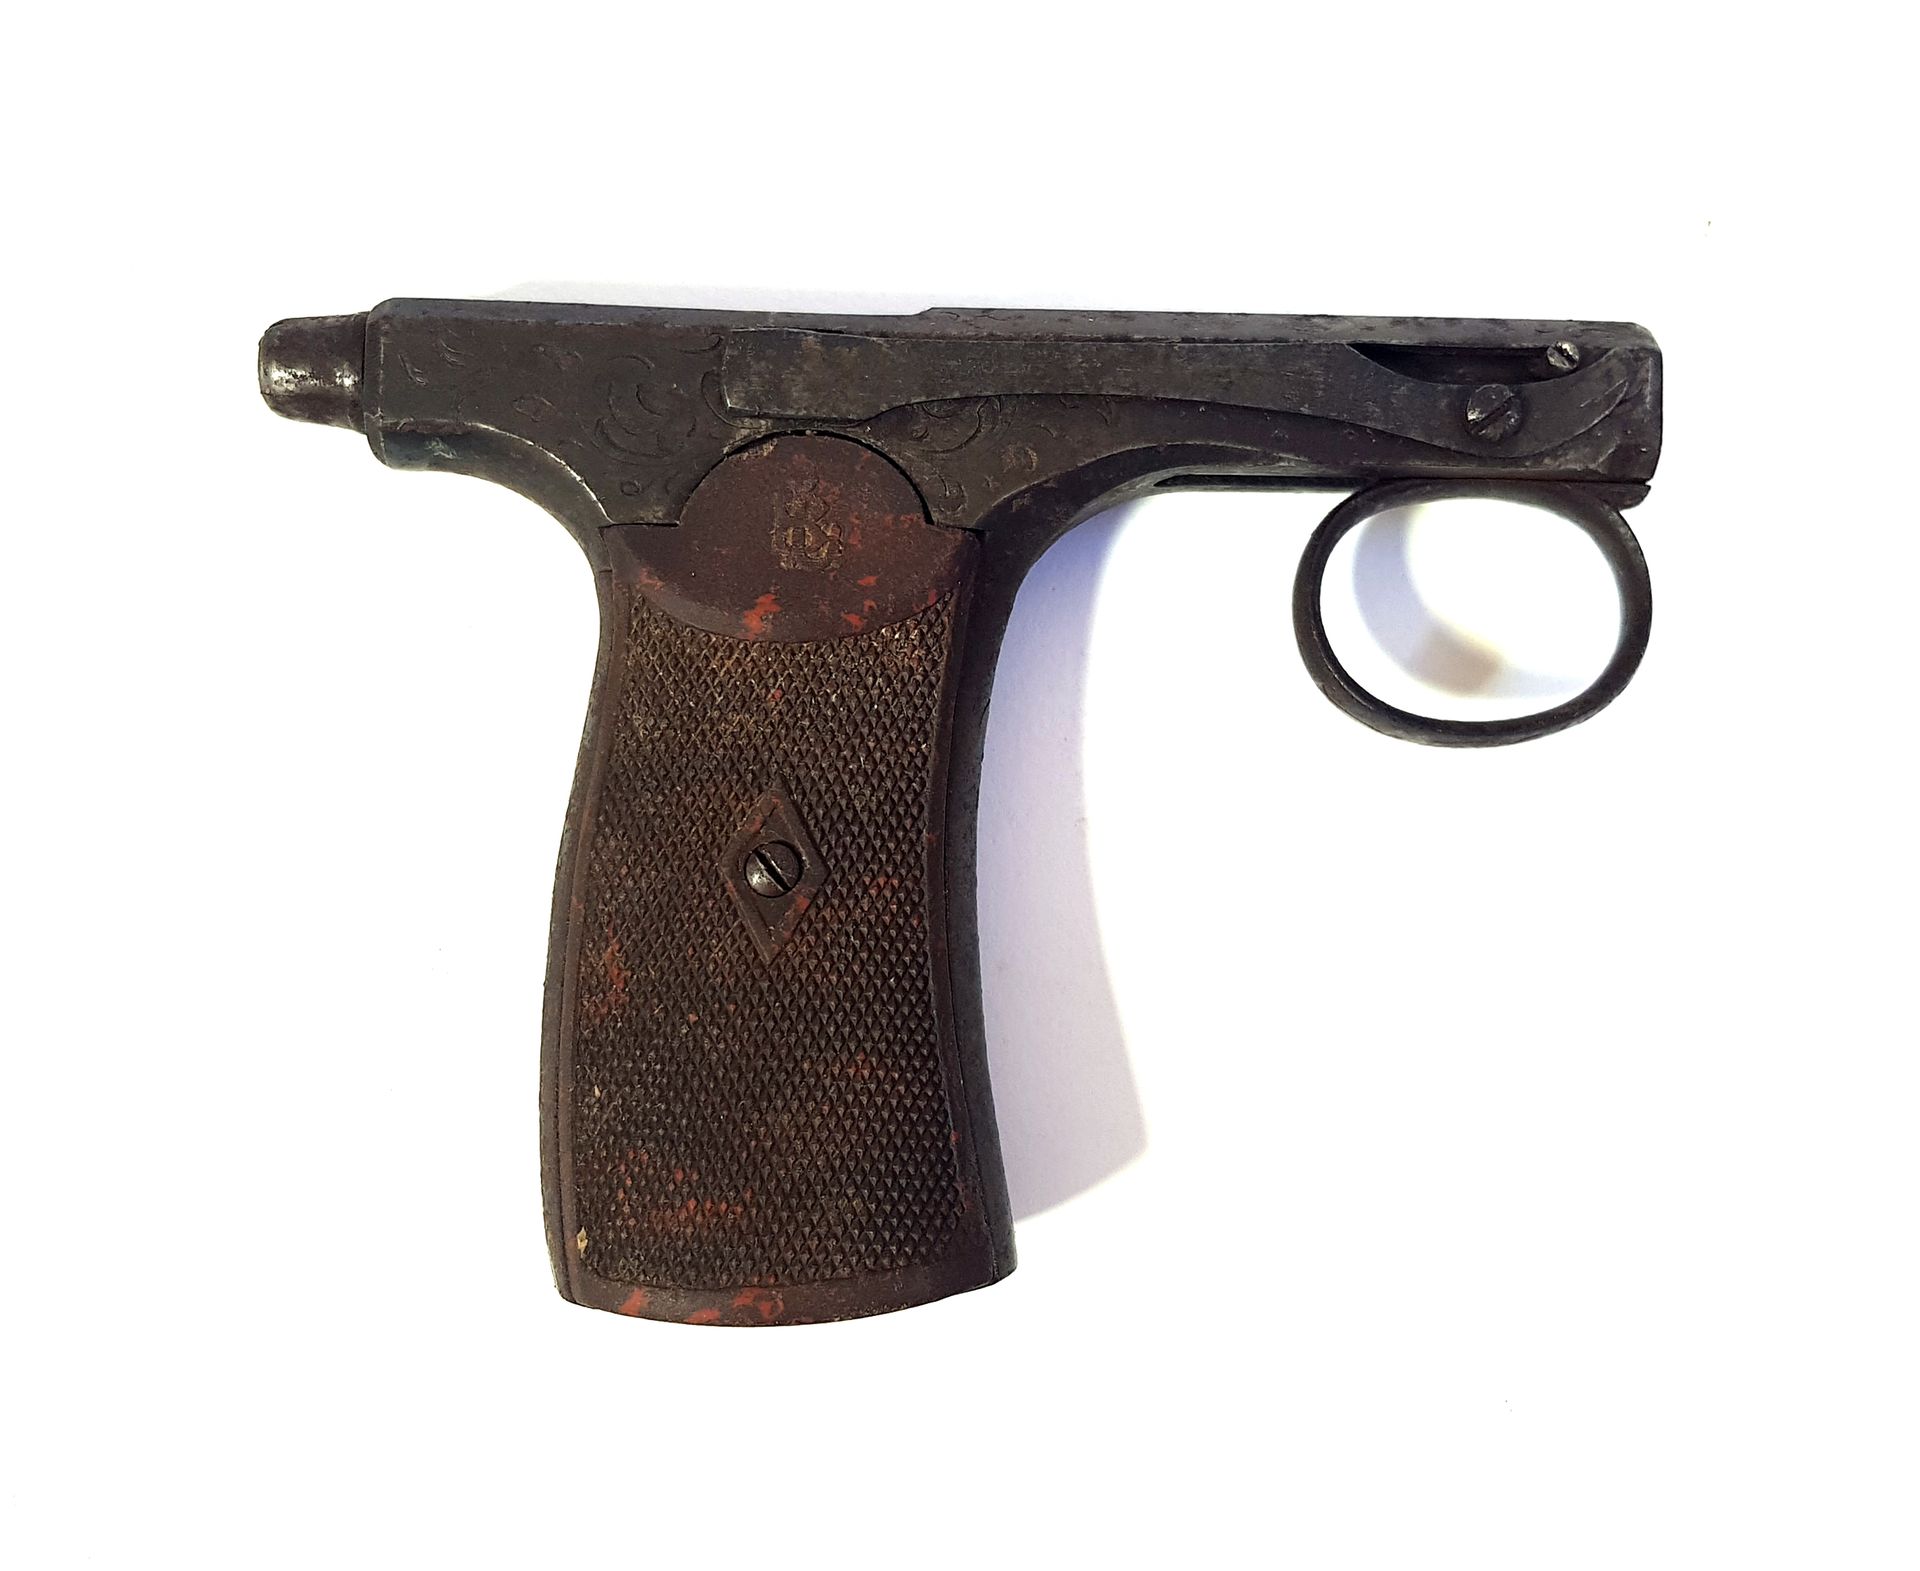 Null Pistola tipo Latrige marrone

L. 12,2 cm

Indossato

Categoria D - vendita &hellip;